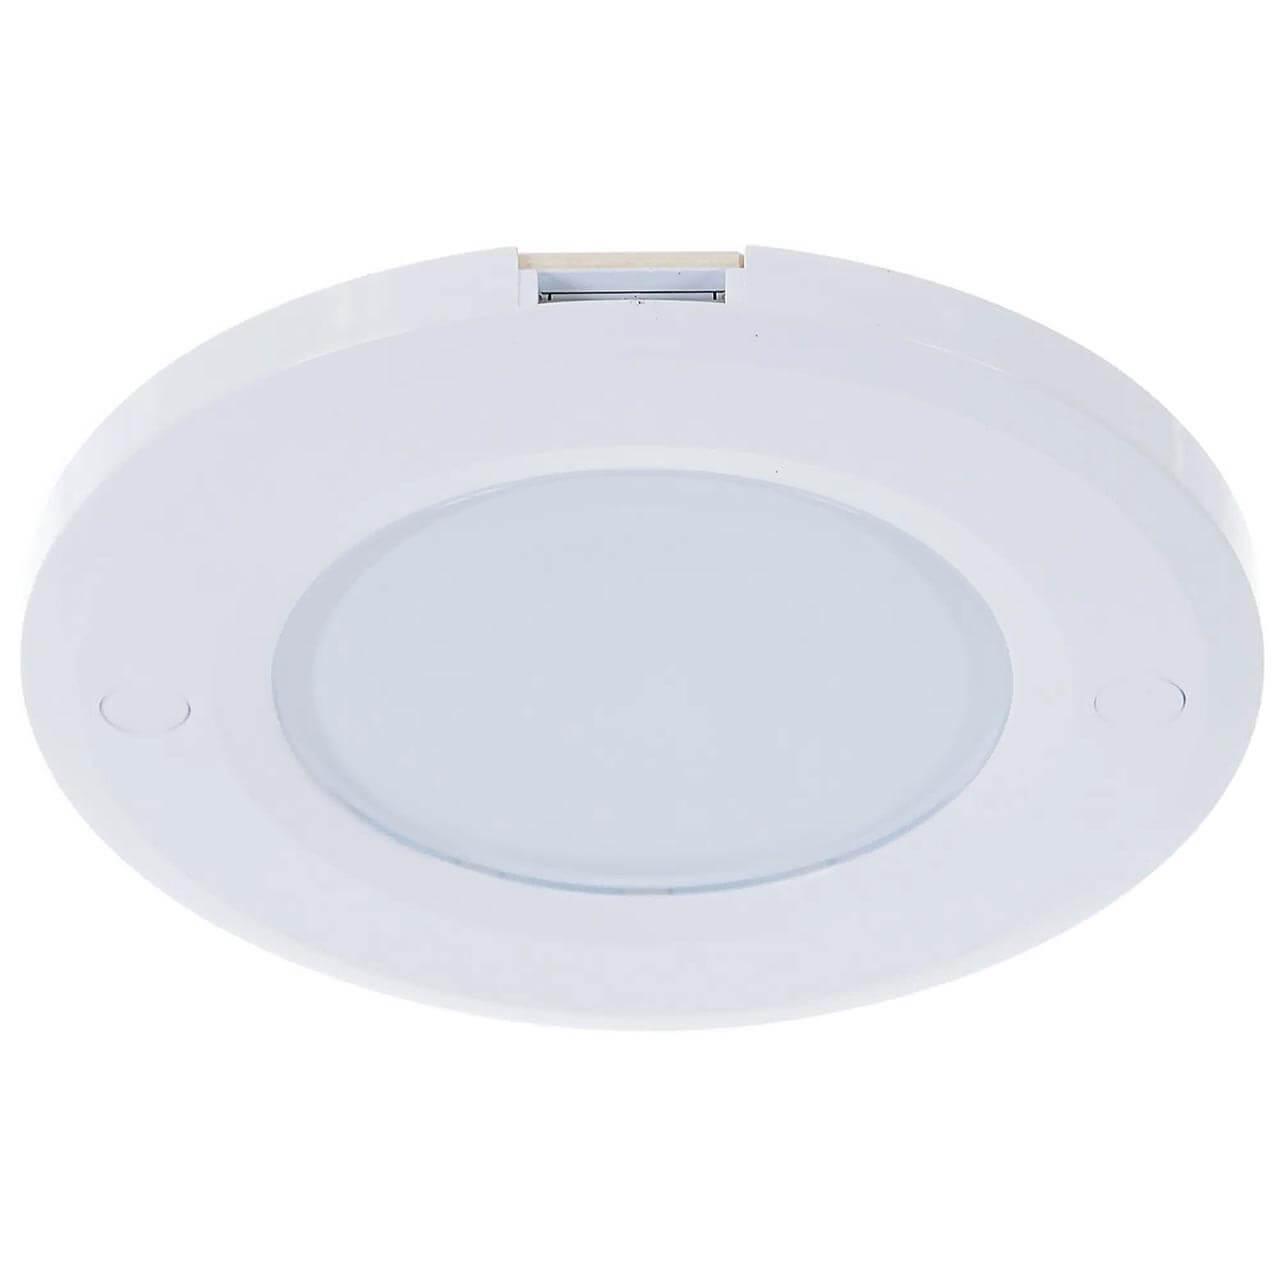 Мебельный светодиодный светильник Uniel ULM-F40-6W/4200K/Dim Sensor IP20 White UL-00002887 мебельный светодиодный светильник uniel ulm f41 6w 4200k dim sensor ip20 white ul 00002888